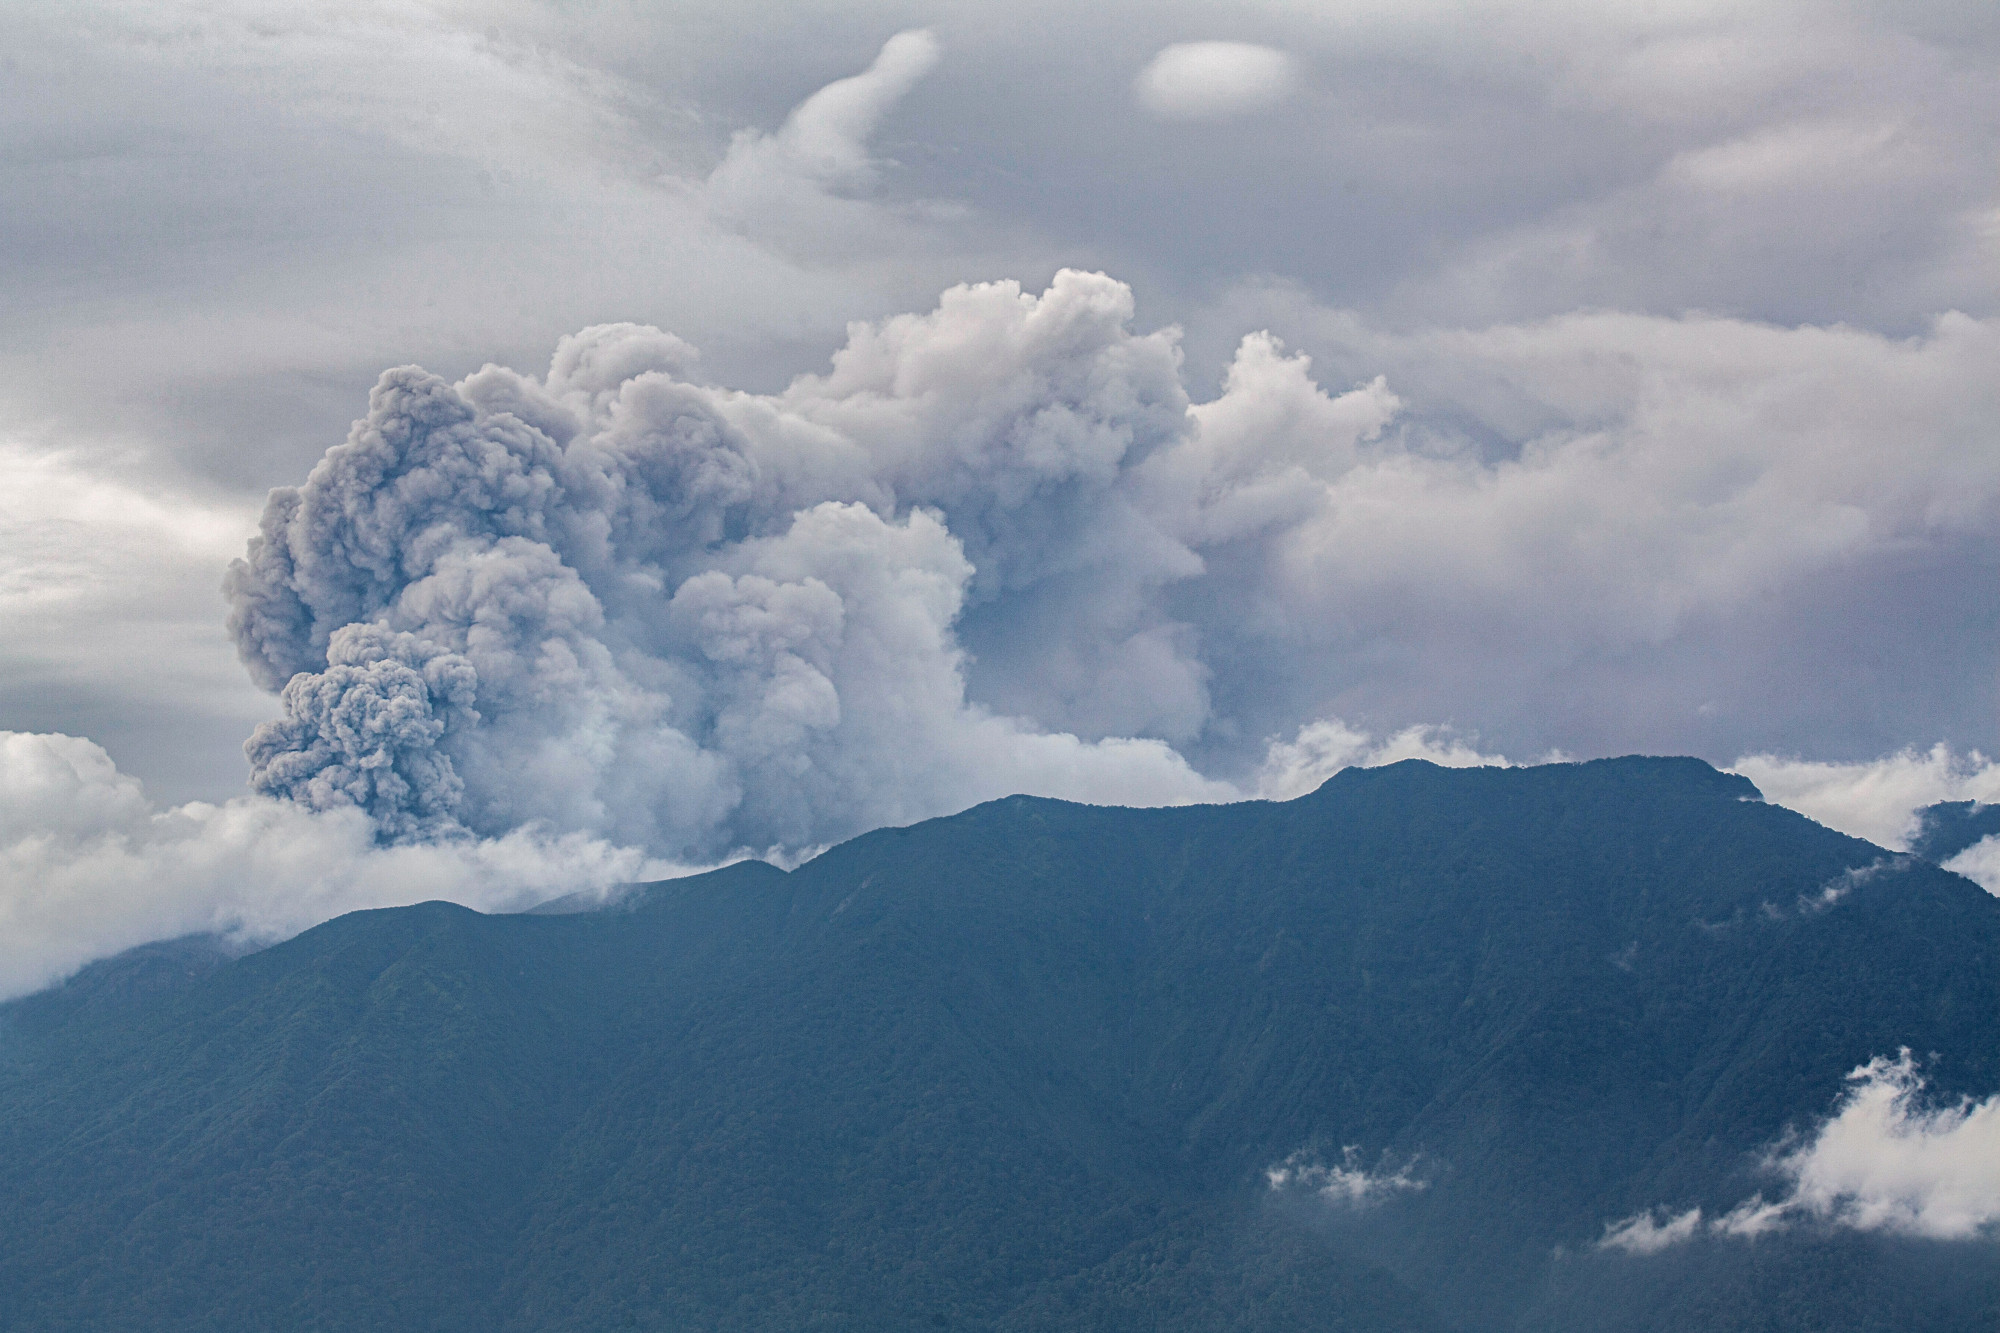 Megtalálták az utolsó eltűnt túrázó holttestét az indonéz Marapi vulkánon